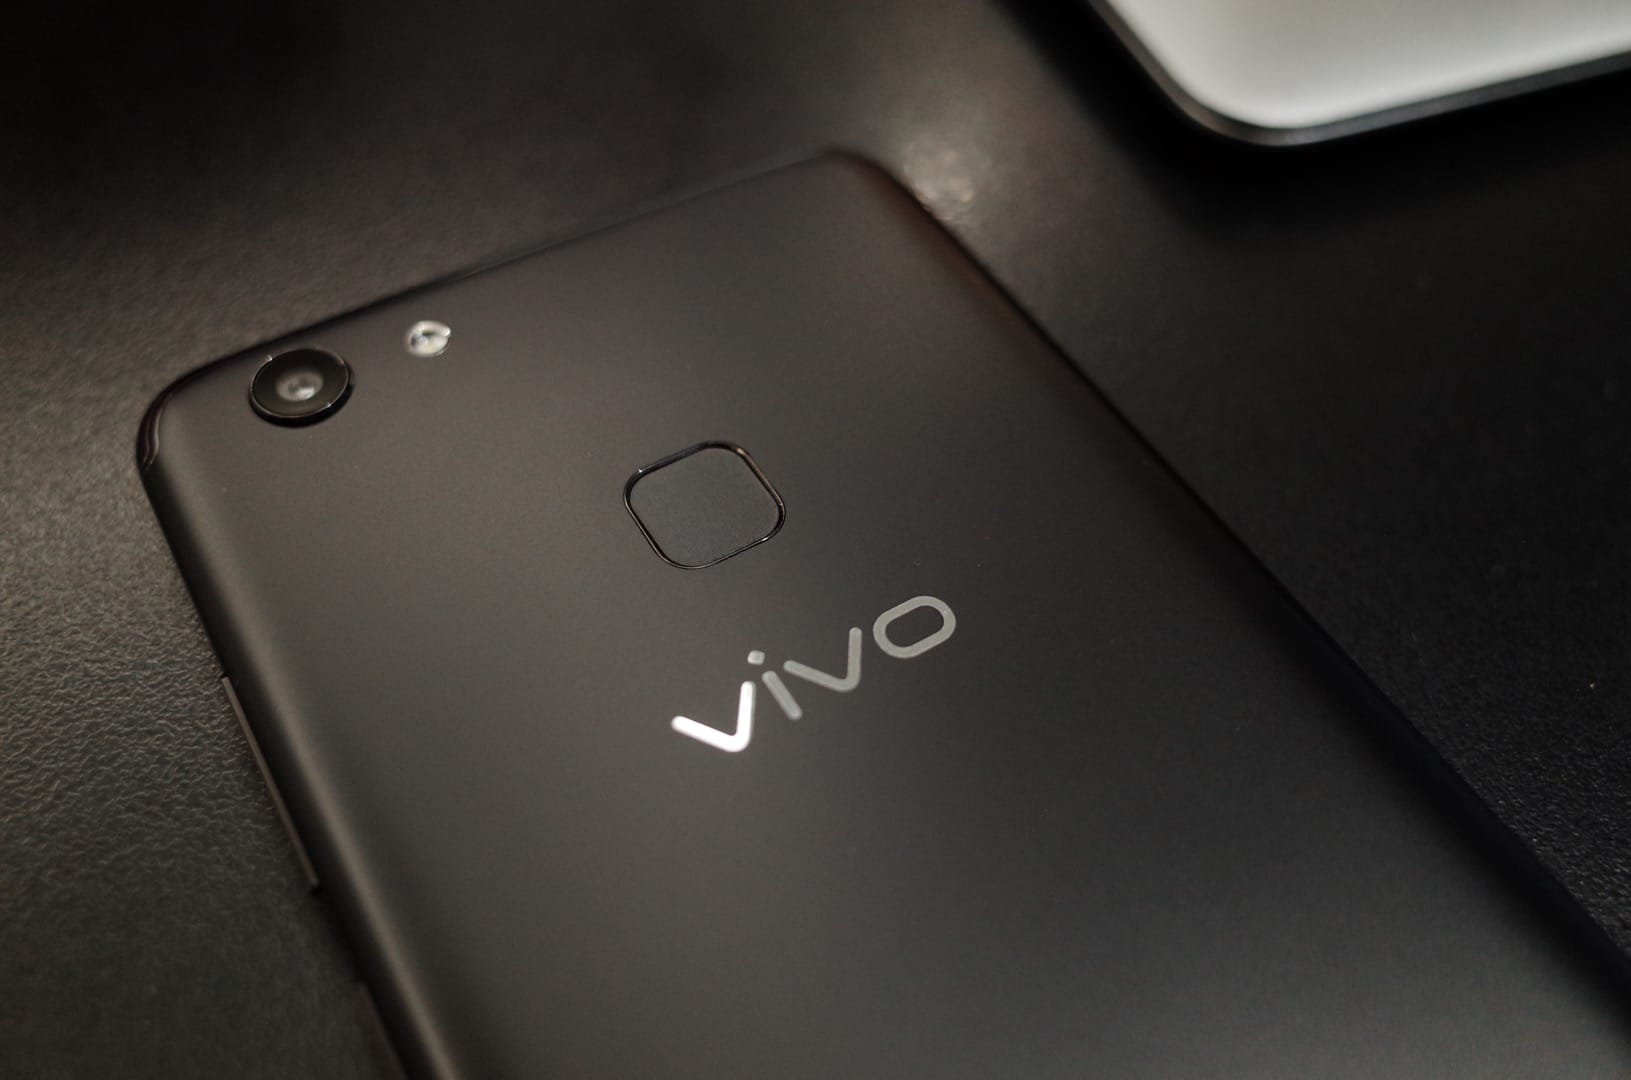 รีวิว Vivo V7+ ผู้นำทัพสมาร์ทโฟนจอยาวจาก Vivo